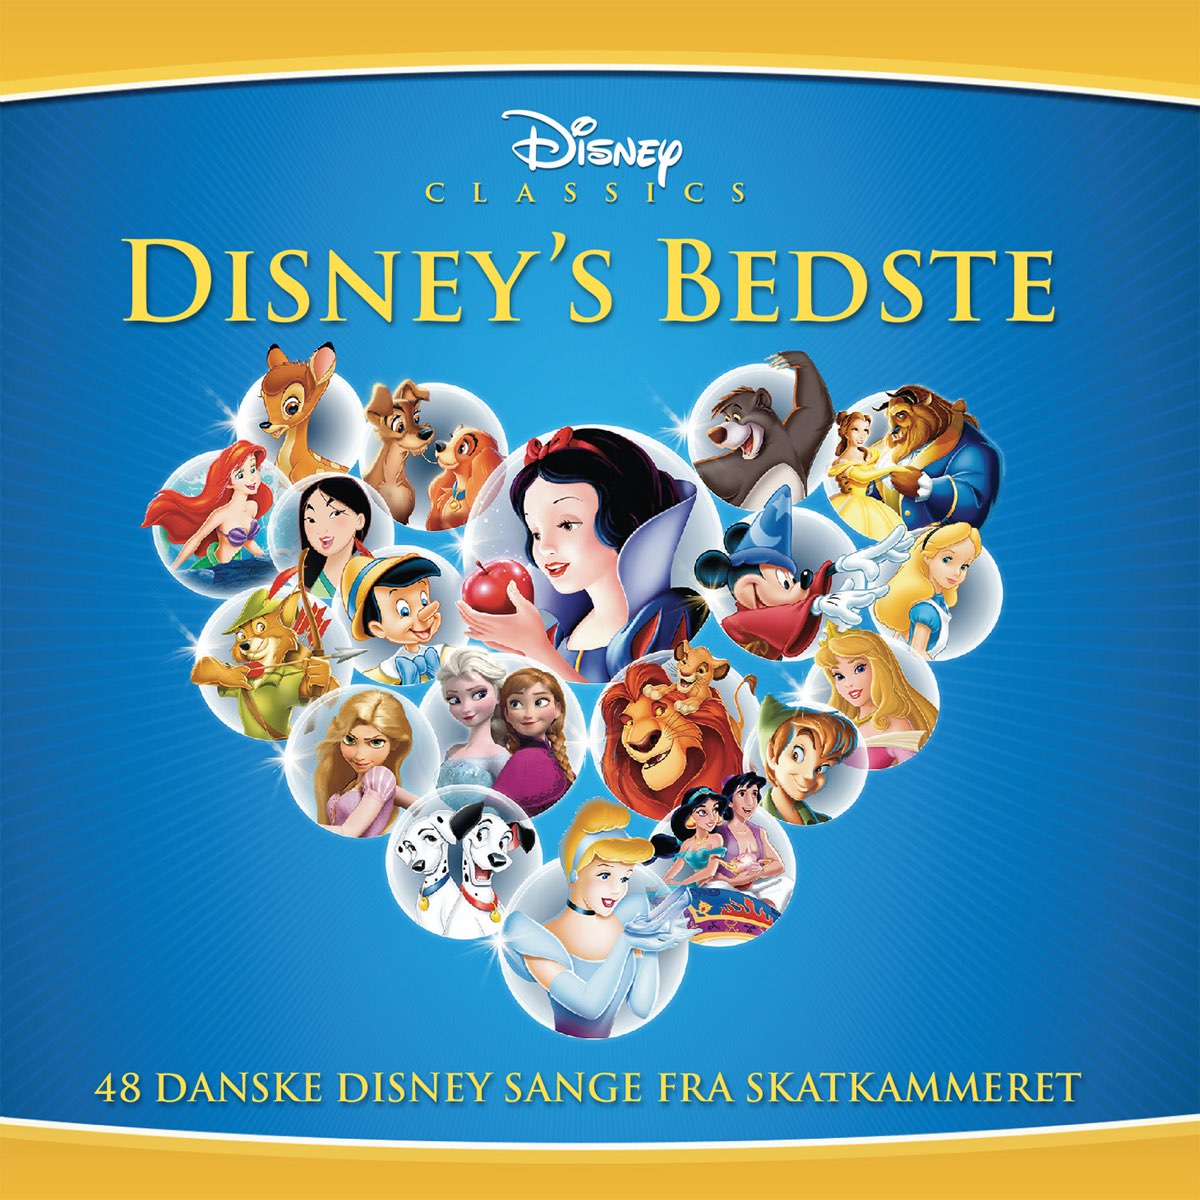 Bedste (48 Danske Disney Sange Fra Skatkammeret) by Artists on Apple Music